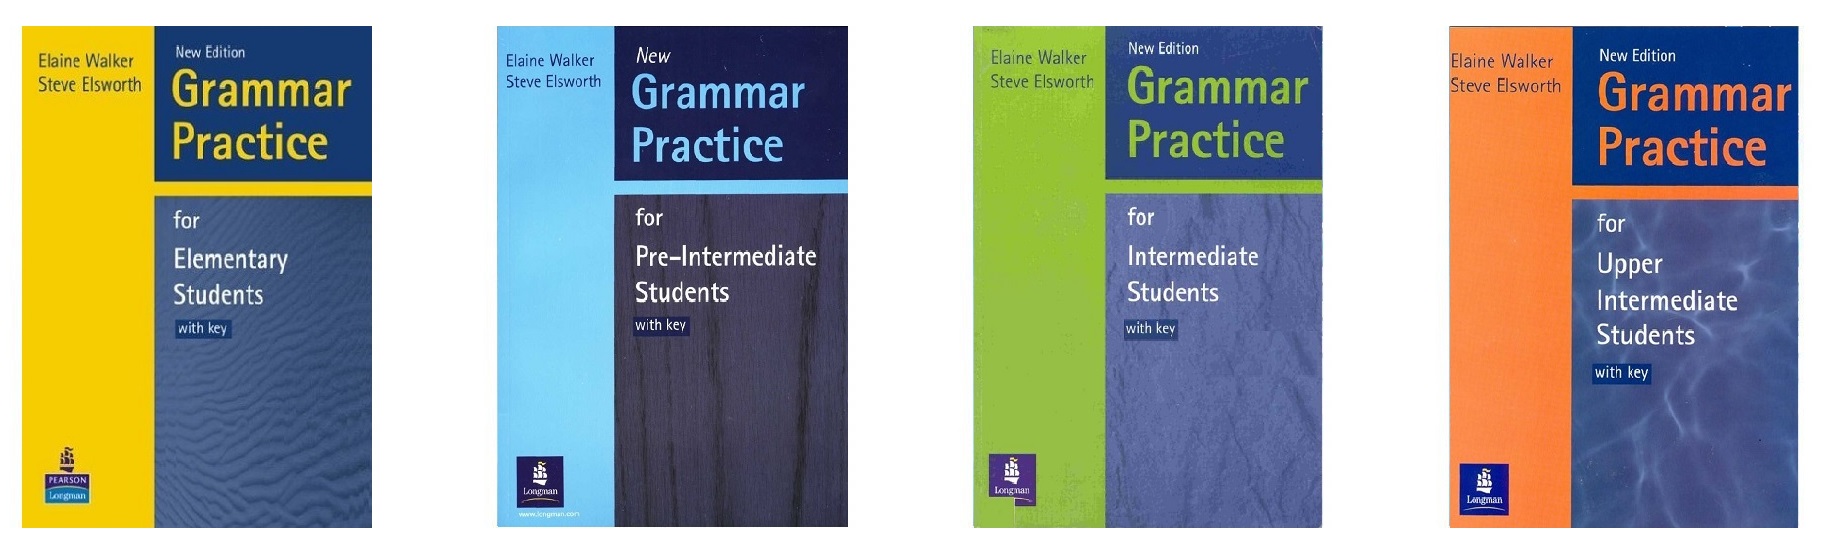 خرید کتاب دستور زبان انگلیسی | کتاب زبان گرامر پرکتیس فور ویرایش جدید | خرید کتاب Grammar Practice for New Edition